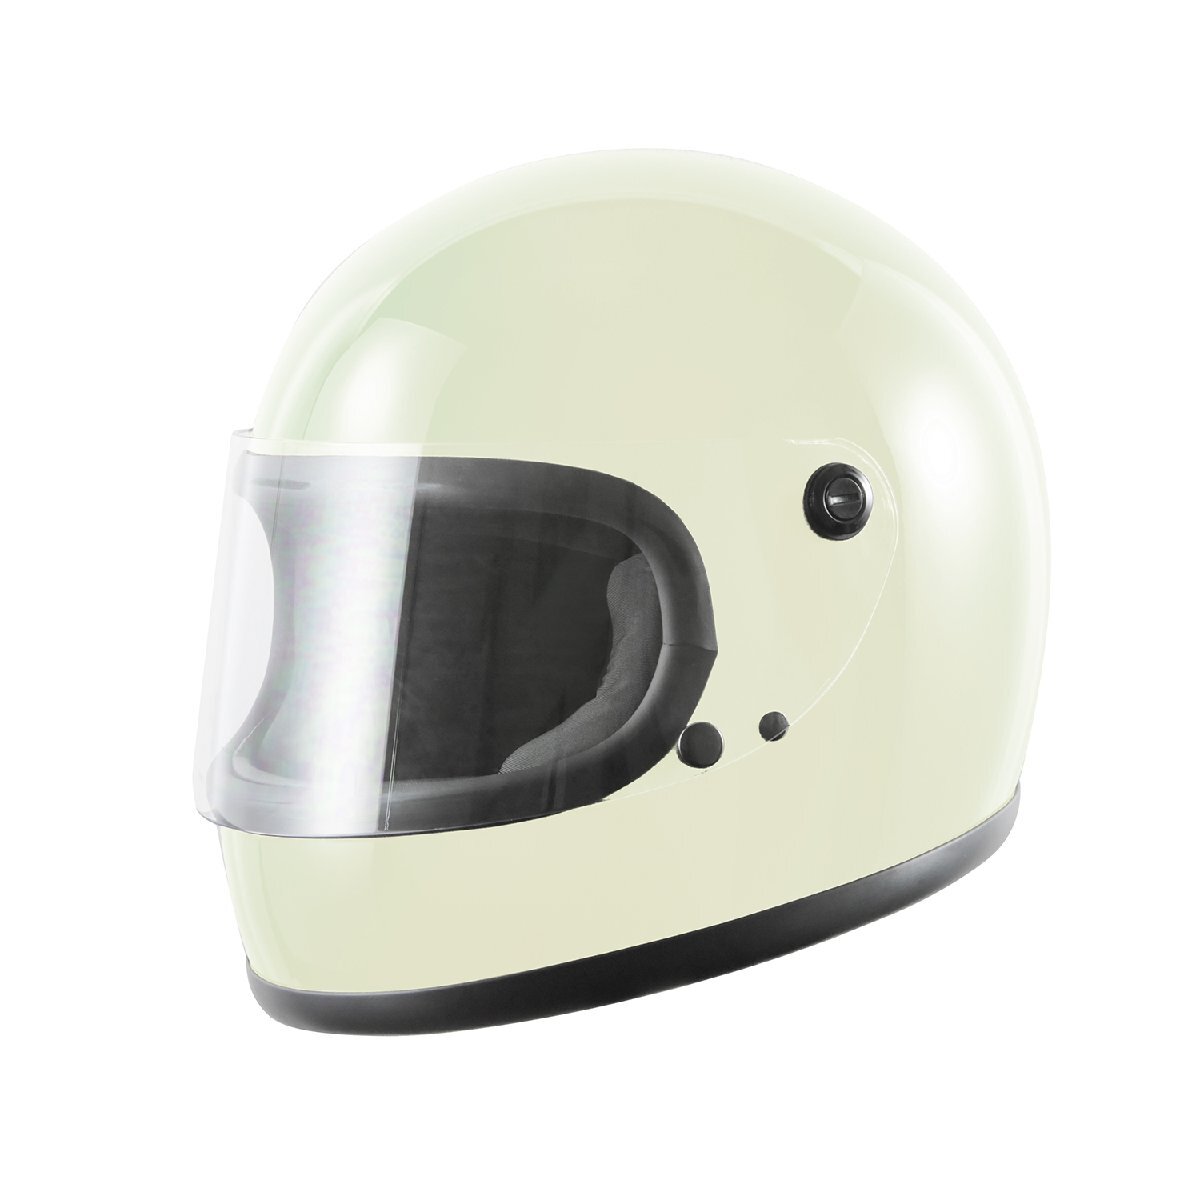 ヘルメット フルフェイス ホワイト ビンテージ レトロ 族ヘル 新品 SG・PSCマーク取得 全排気量対応 バイクパーツセンターの画像1